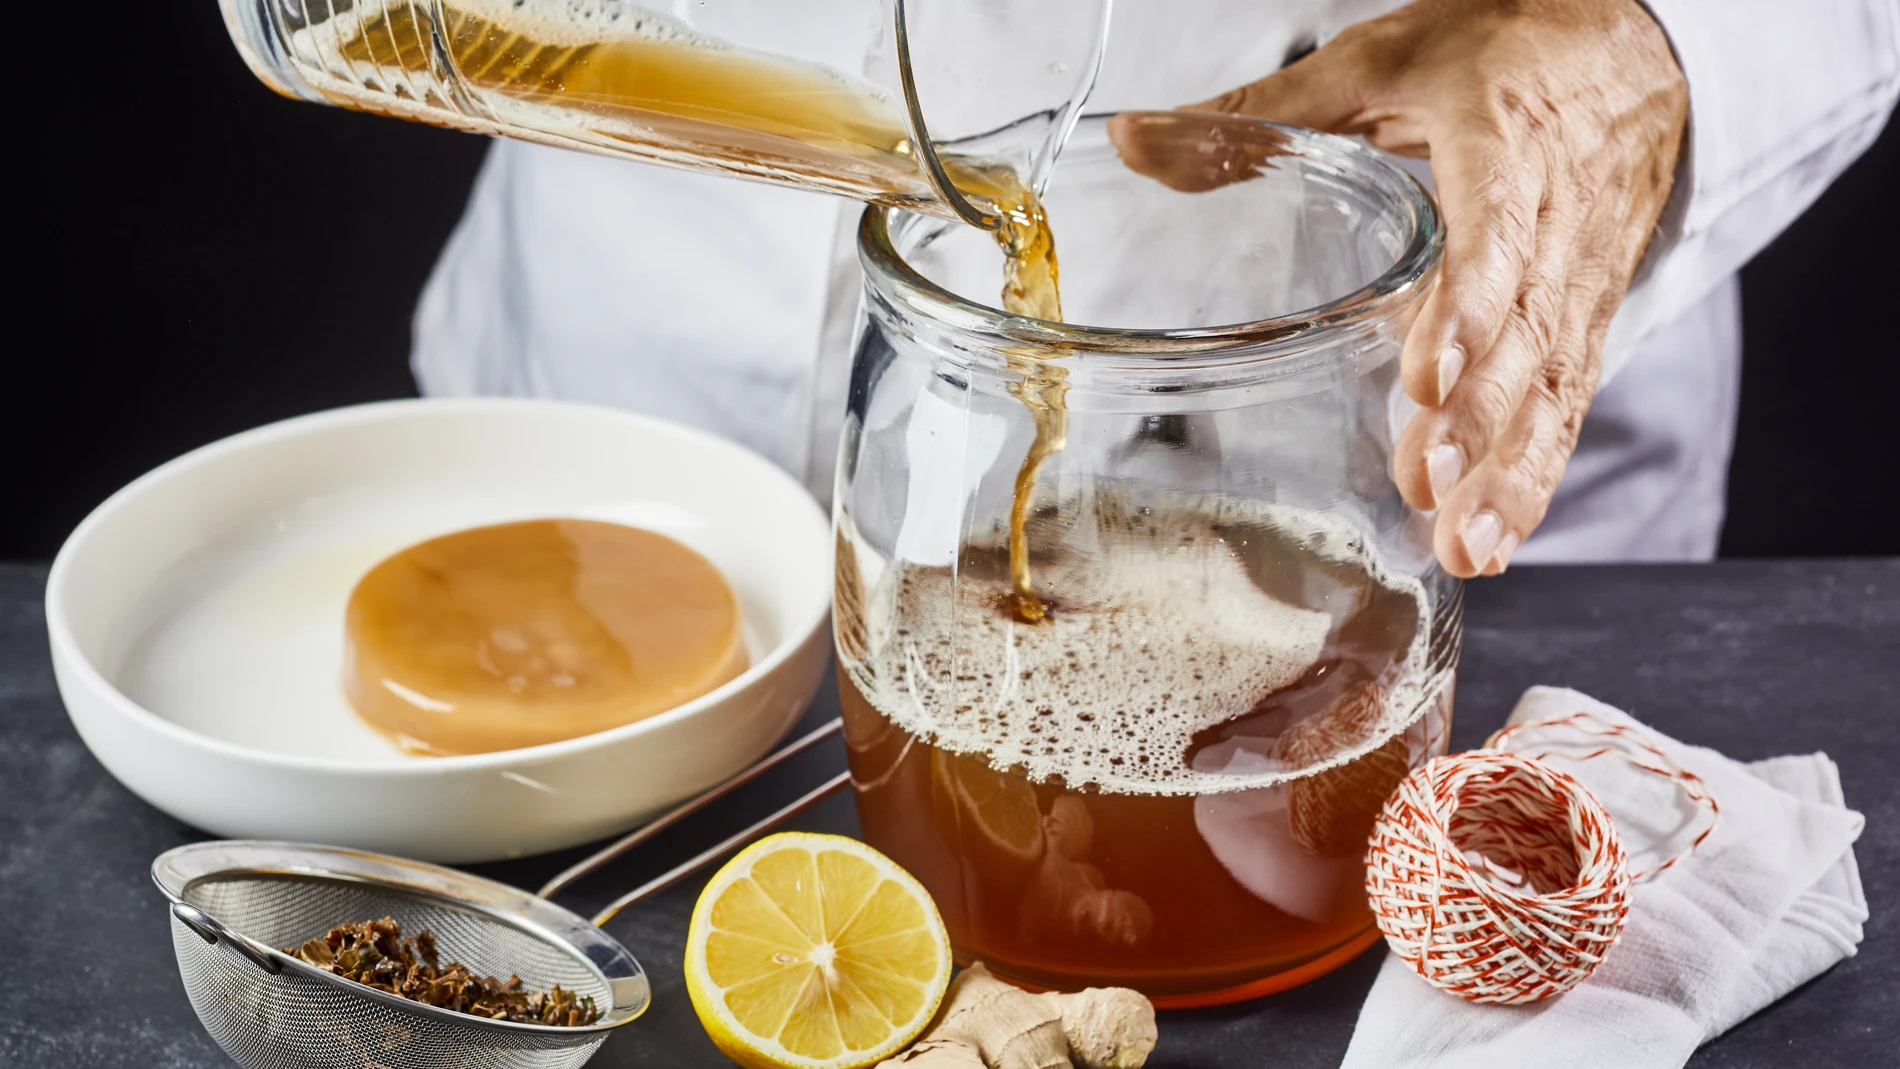 La kombucha es una bebida que se elabora a base de té endulzado que es fermentado por una mezcla de microorganismos